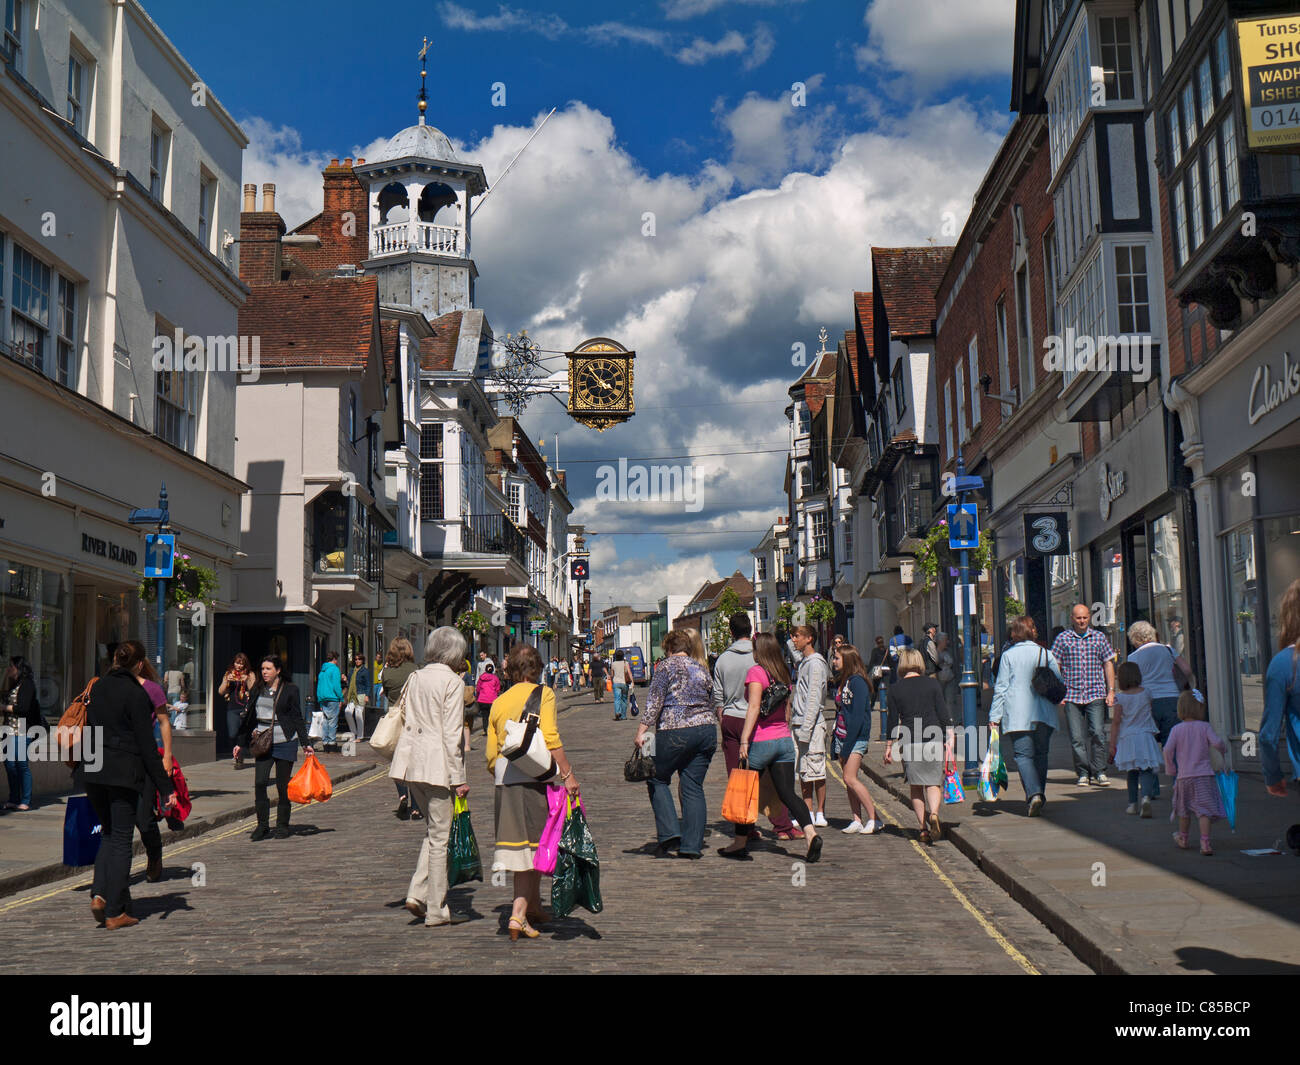 GUILDFORD Shoppers foules occupées dans Guildford historique et pavée circulation libre High Street avec horloge célèbre, profitant du soleil printanier Guildford Surrey Royaume-Uni Banque D'Images